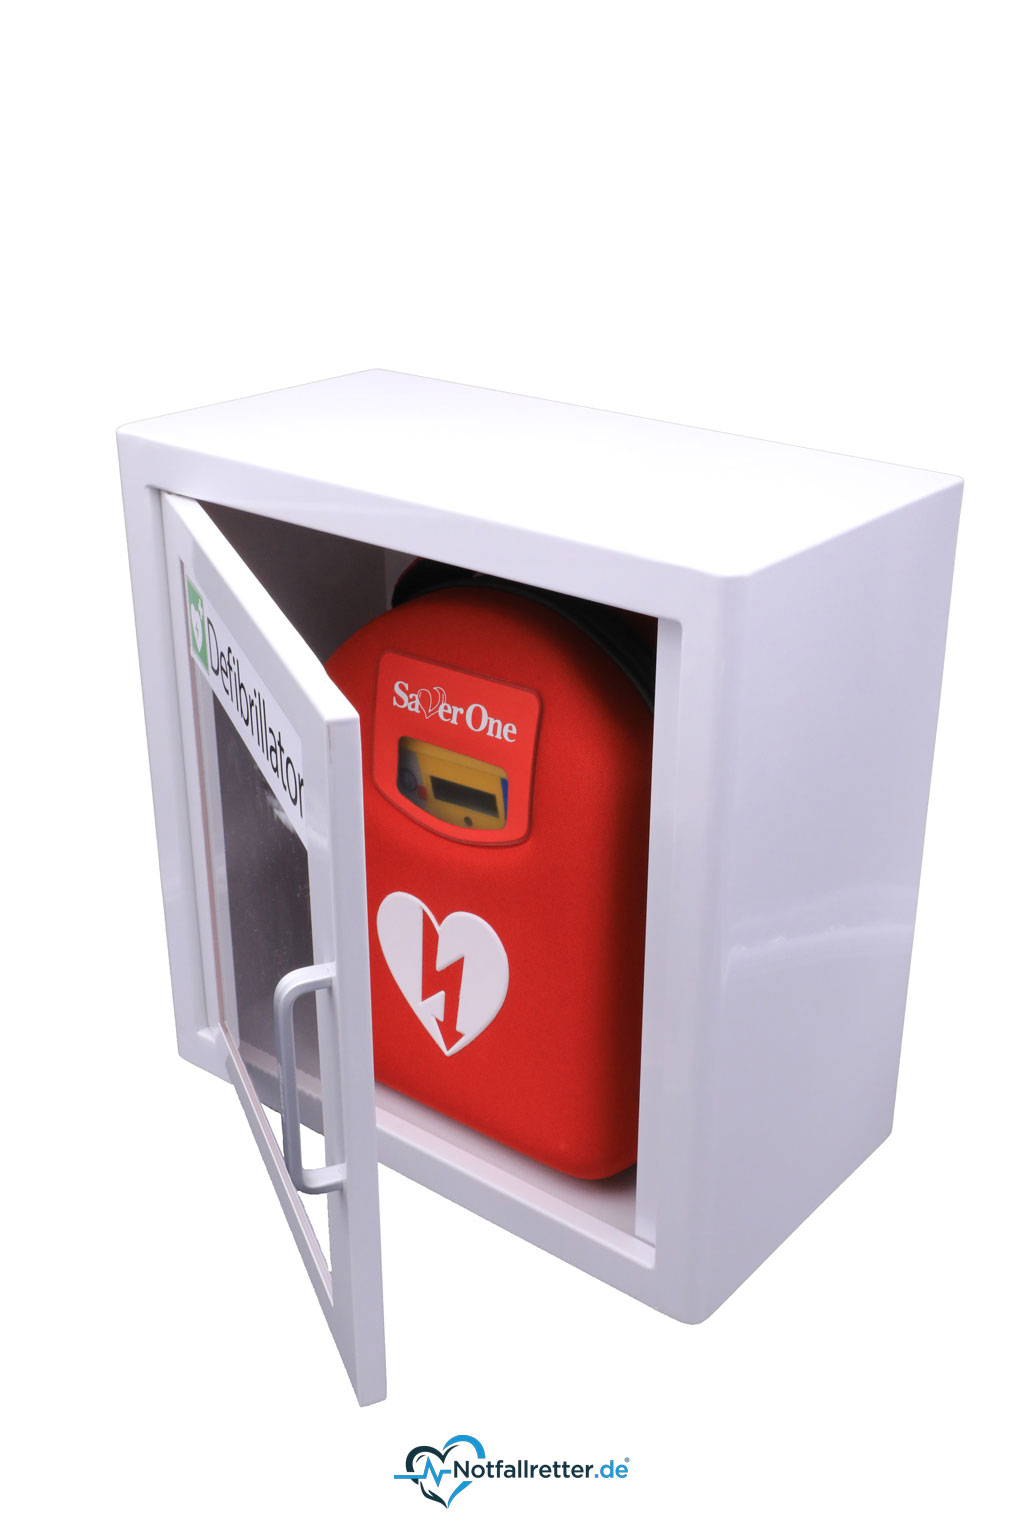 Metall-Wandschrank ohne Alarm für Defibrillator AED mit Kunststoffschauglas und Alugriff